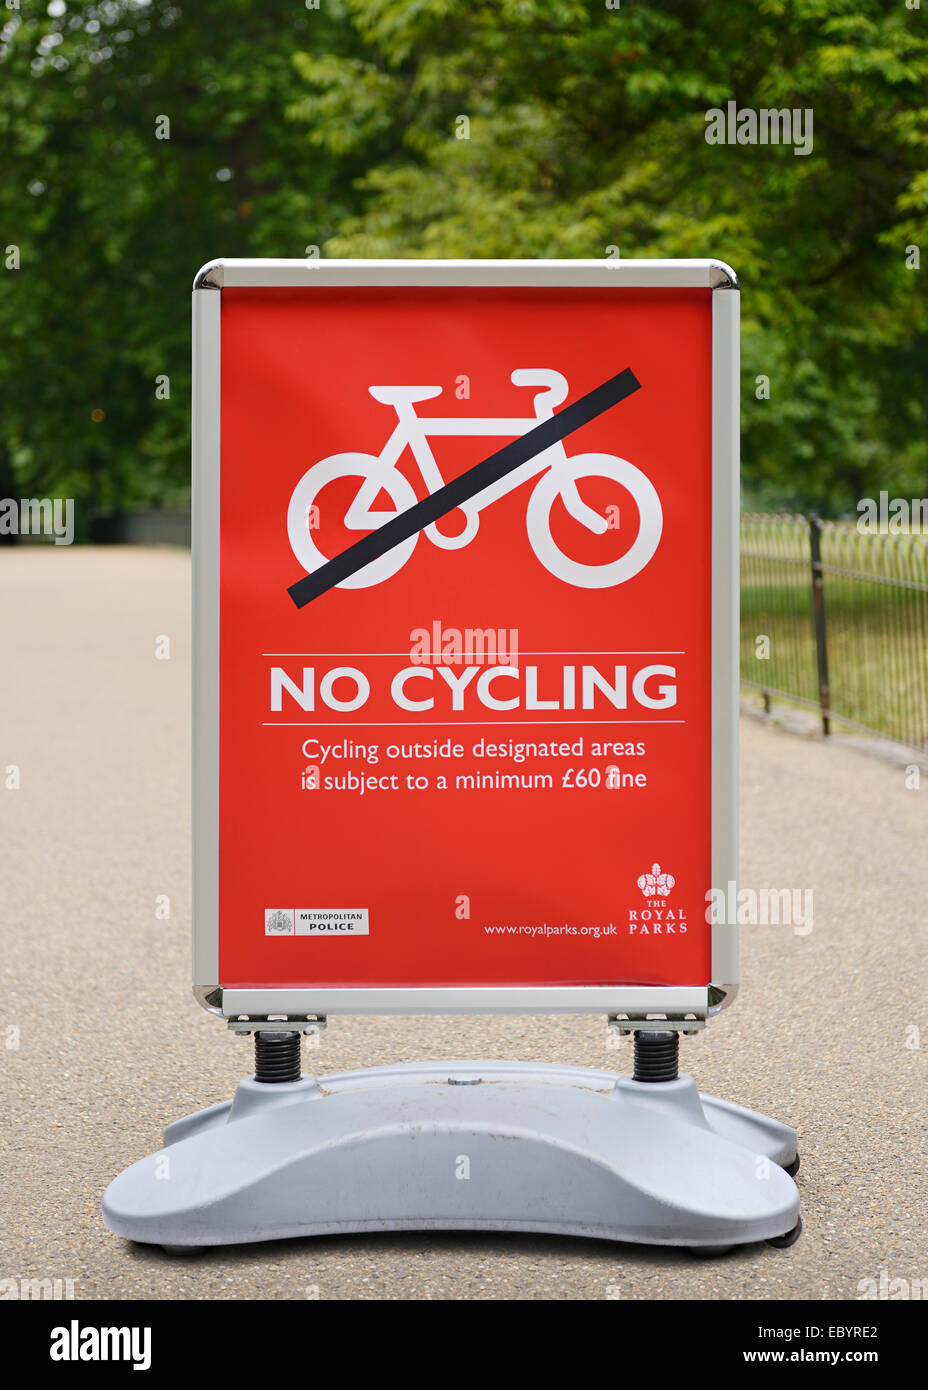 No hay signo de ciclismo, St James Park, Londres, Reino Unido. Foto de stock